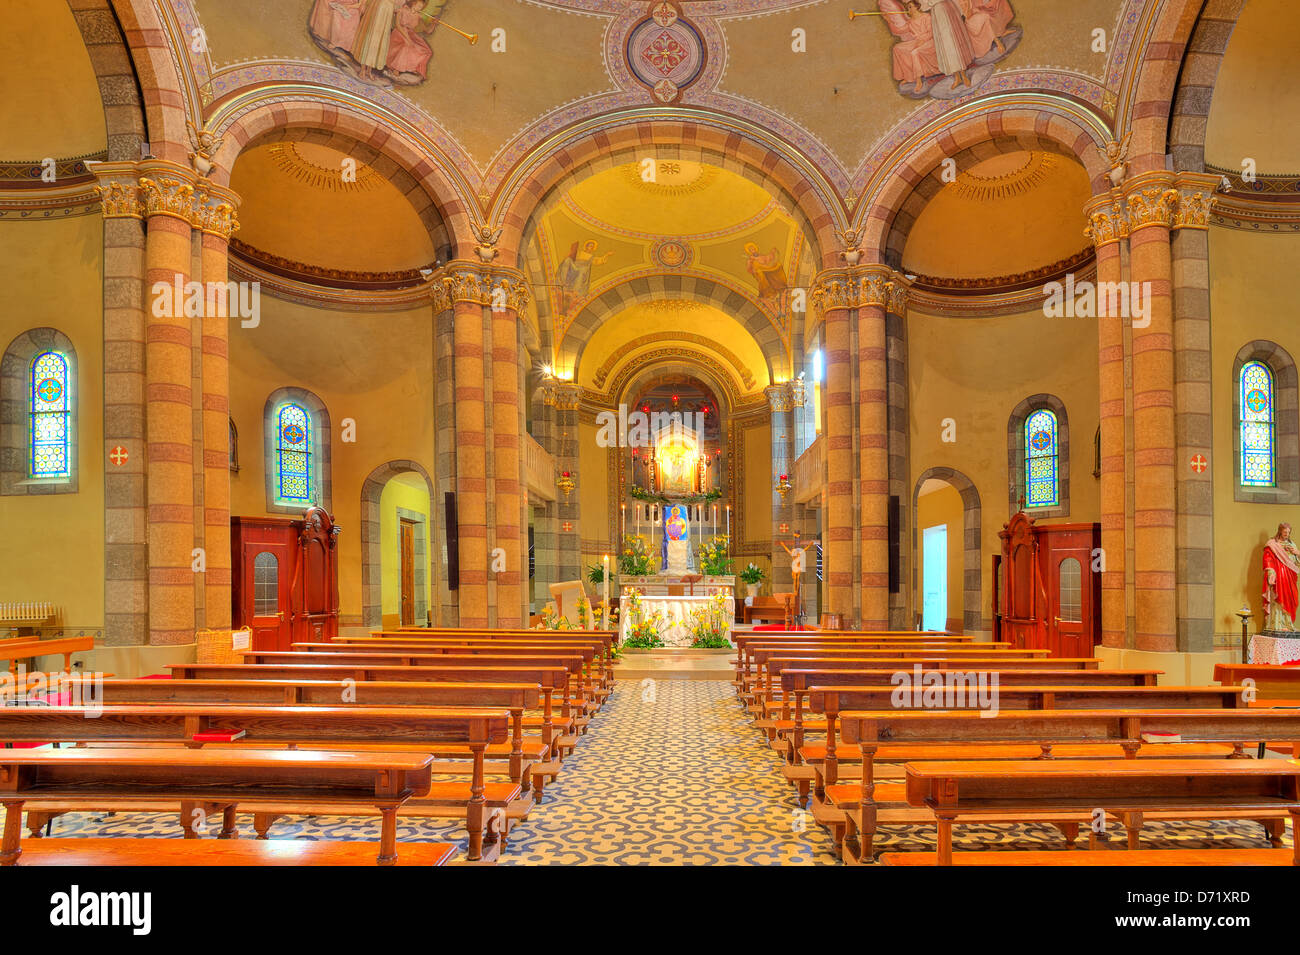 Bänke und Altar zwischen den Spalten im Rahmen der Innenansicht der Madonna Moretta katholische Kirche in Alba, Norditalien. Stockfoto